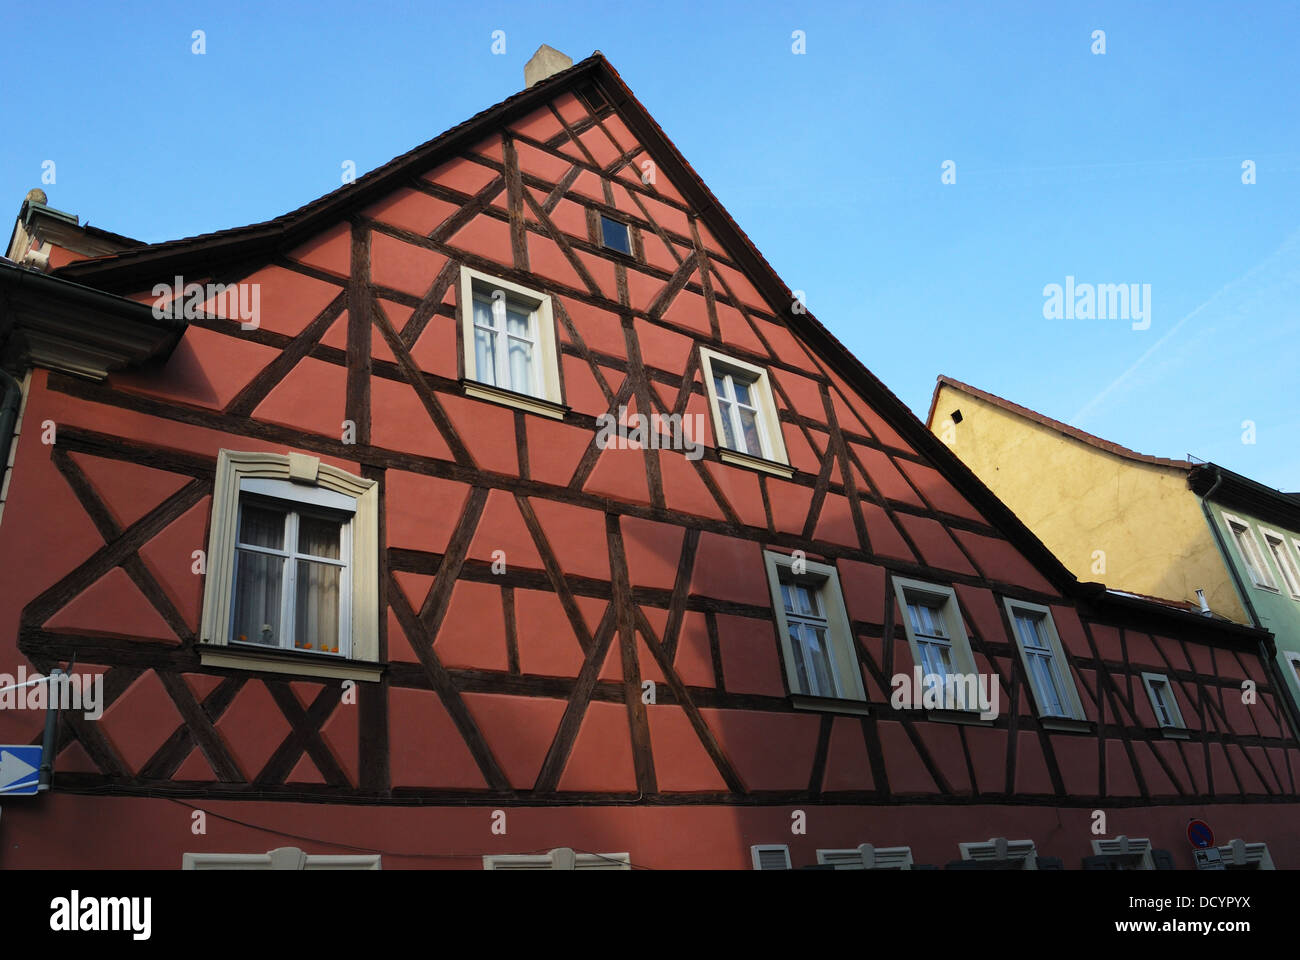 L'architecture à colombages de style local, Bamberg, Bavière, Allemagne, Europe. Banque D'Images